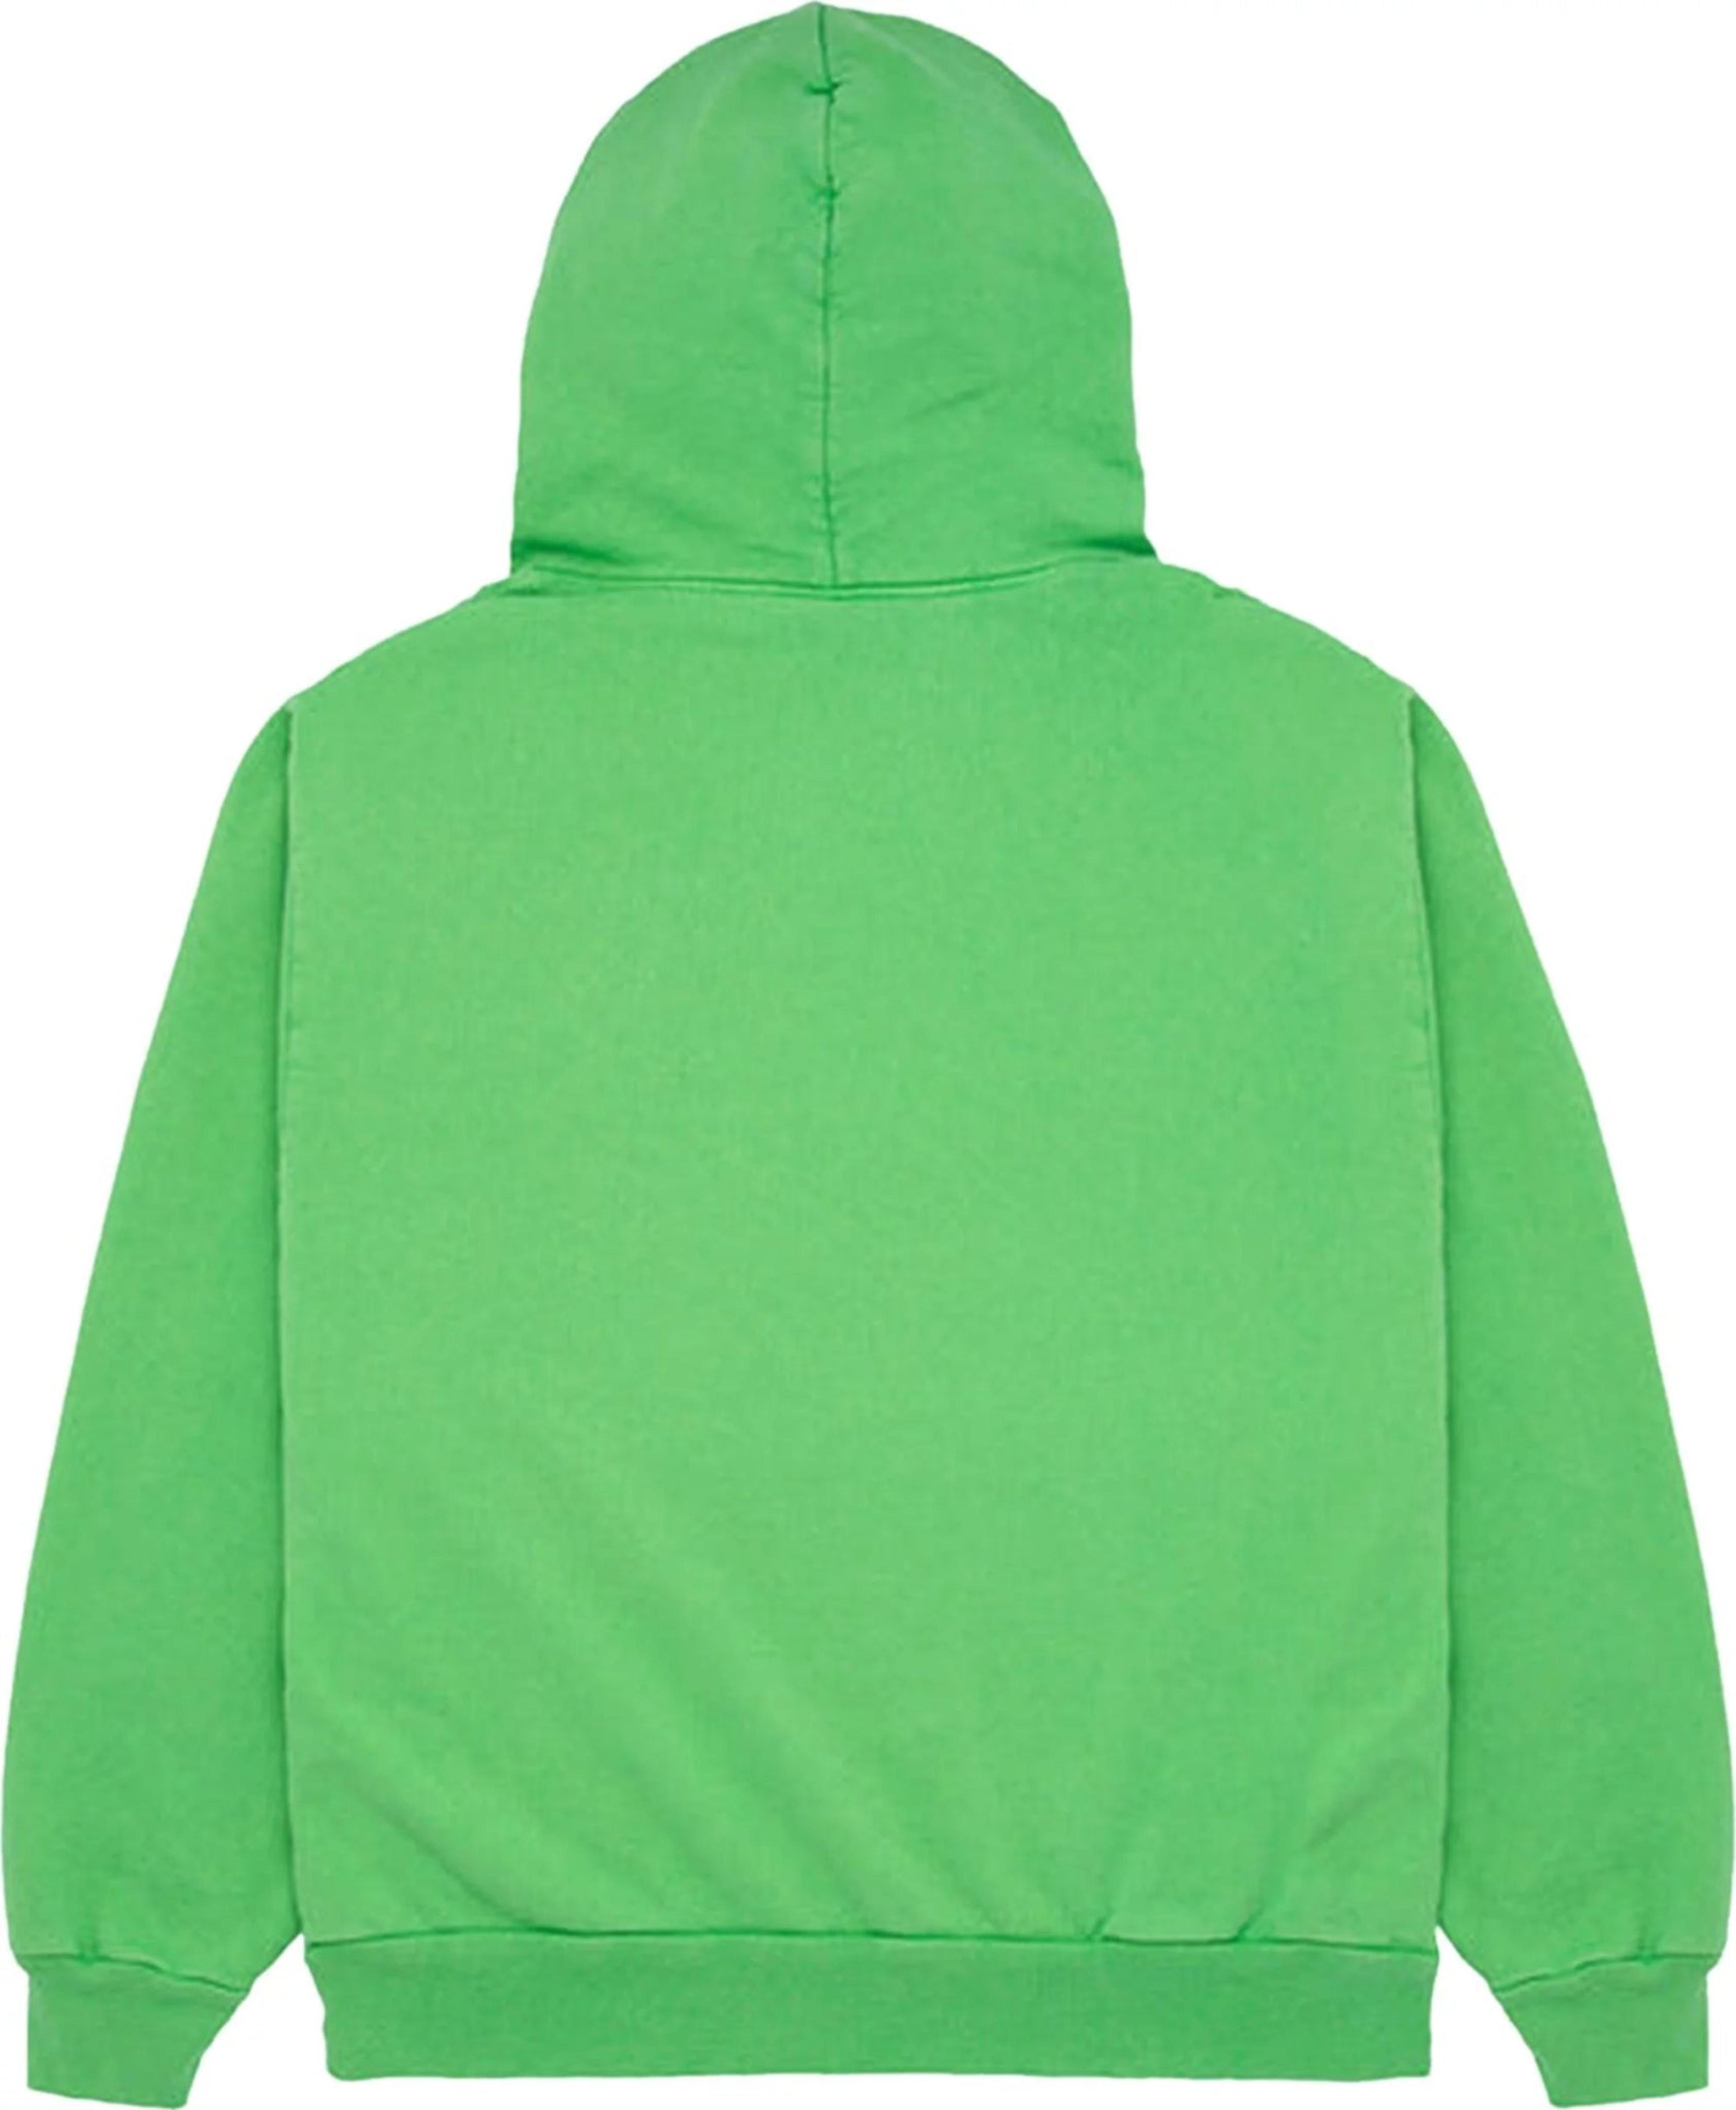 Alternate View 1 of Sp5der Websuit Hoodie Slime Green